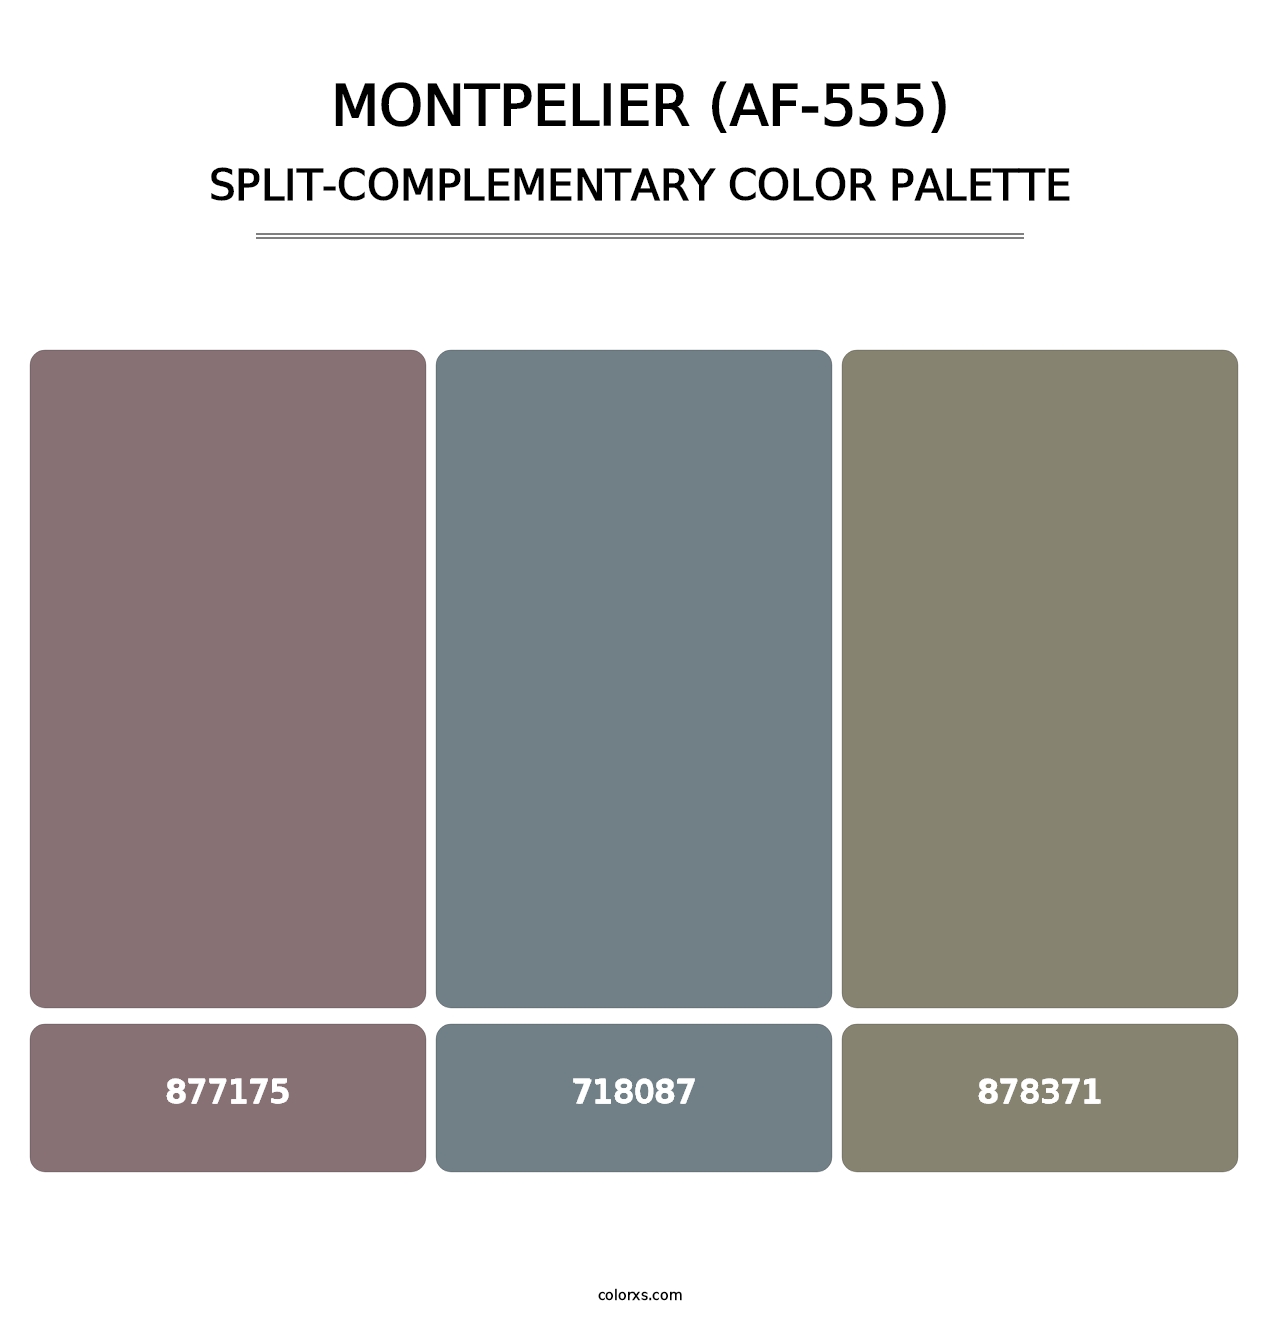 Montpelier (AF-555) - Split-Complementary Color Palette